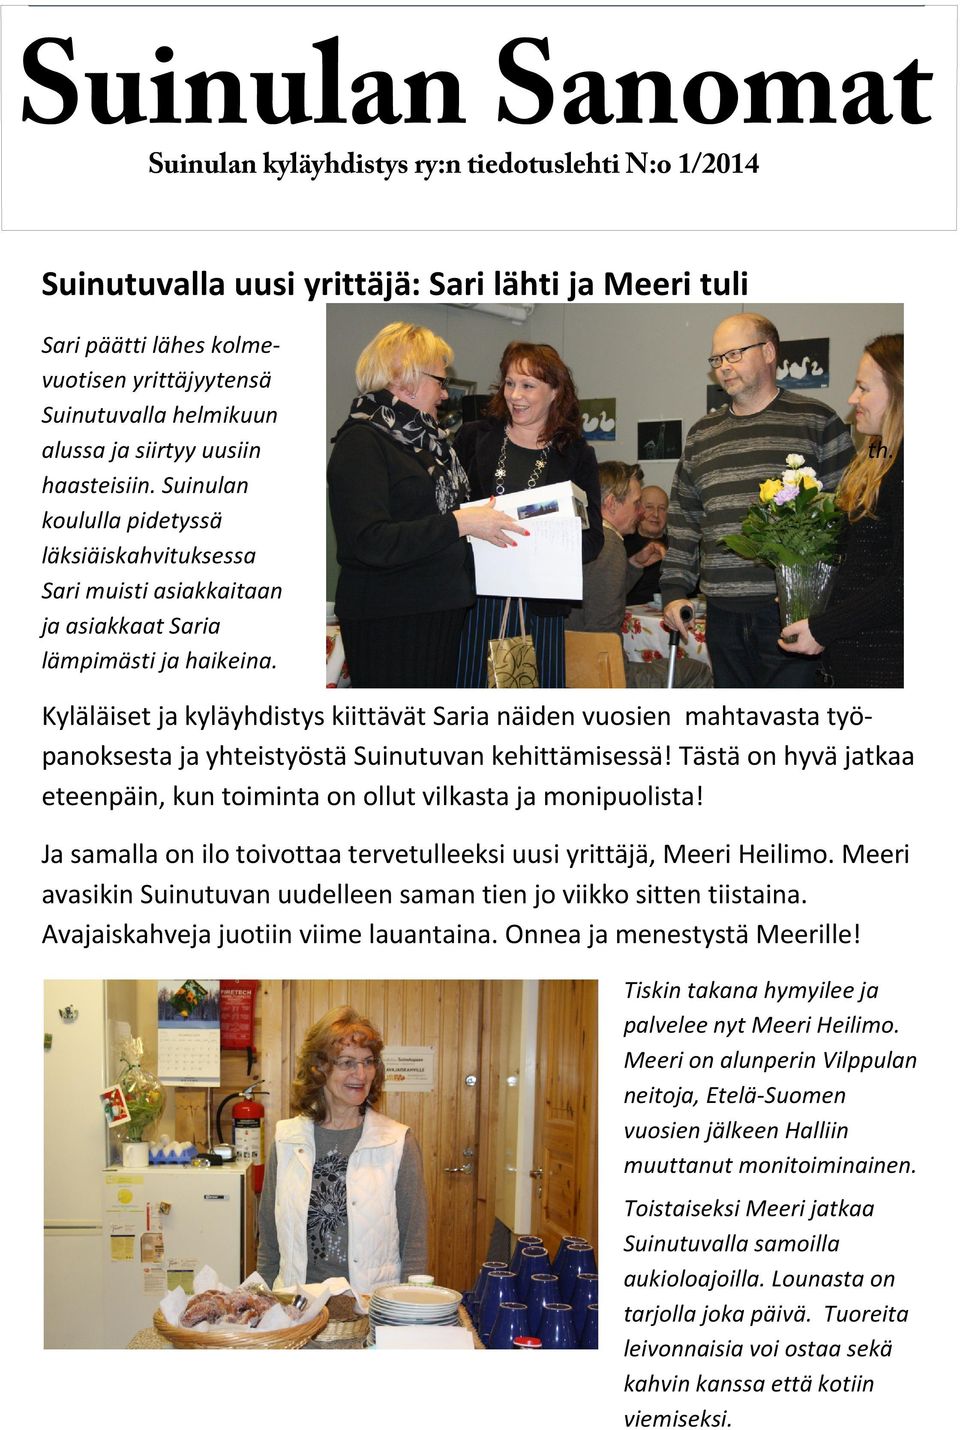 Kyläläiset ja kyläyhdistys kiittävät Saria näiden vuosien mahtavasta työpanoksesta ja yhteistyöstä Suinutuvan kehittämisessä!